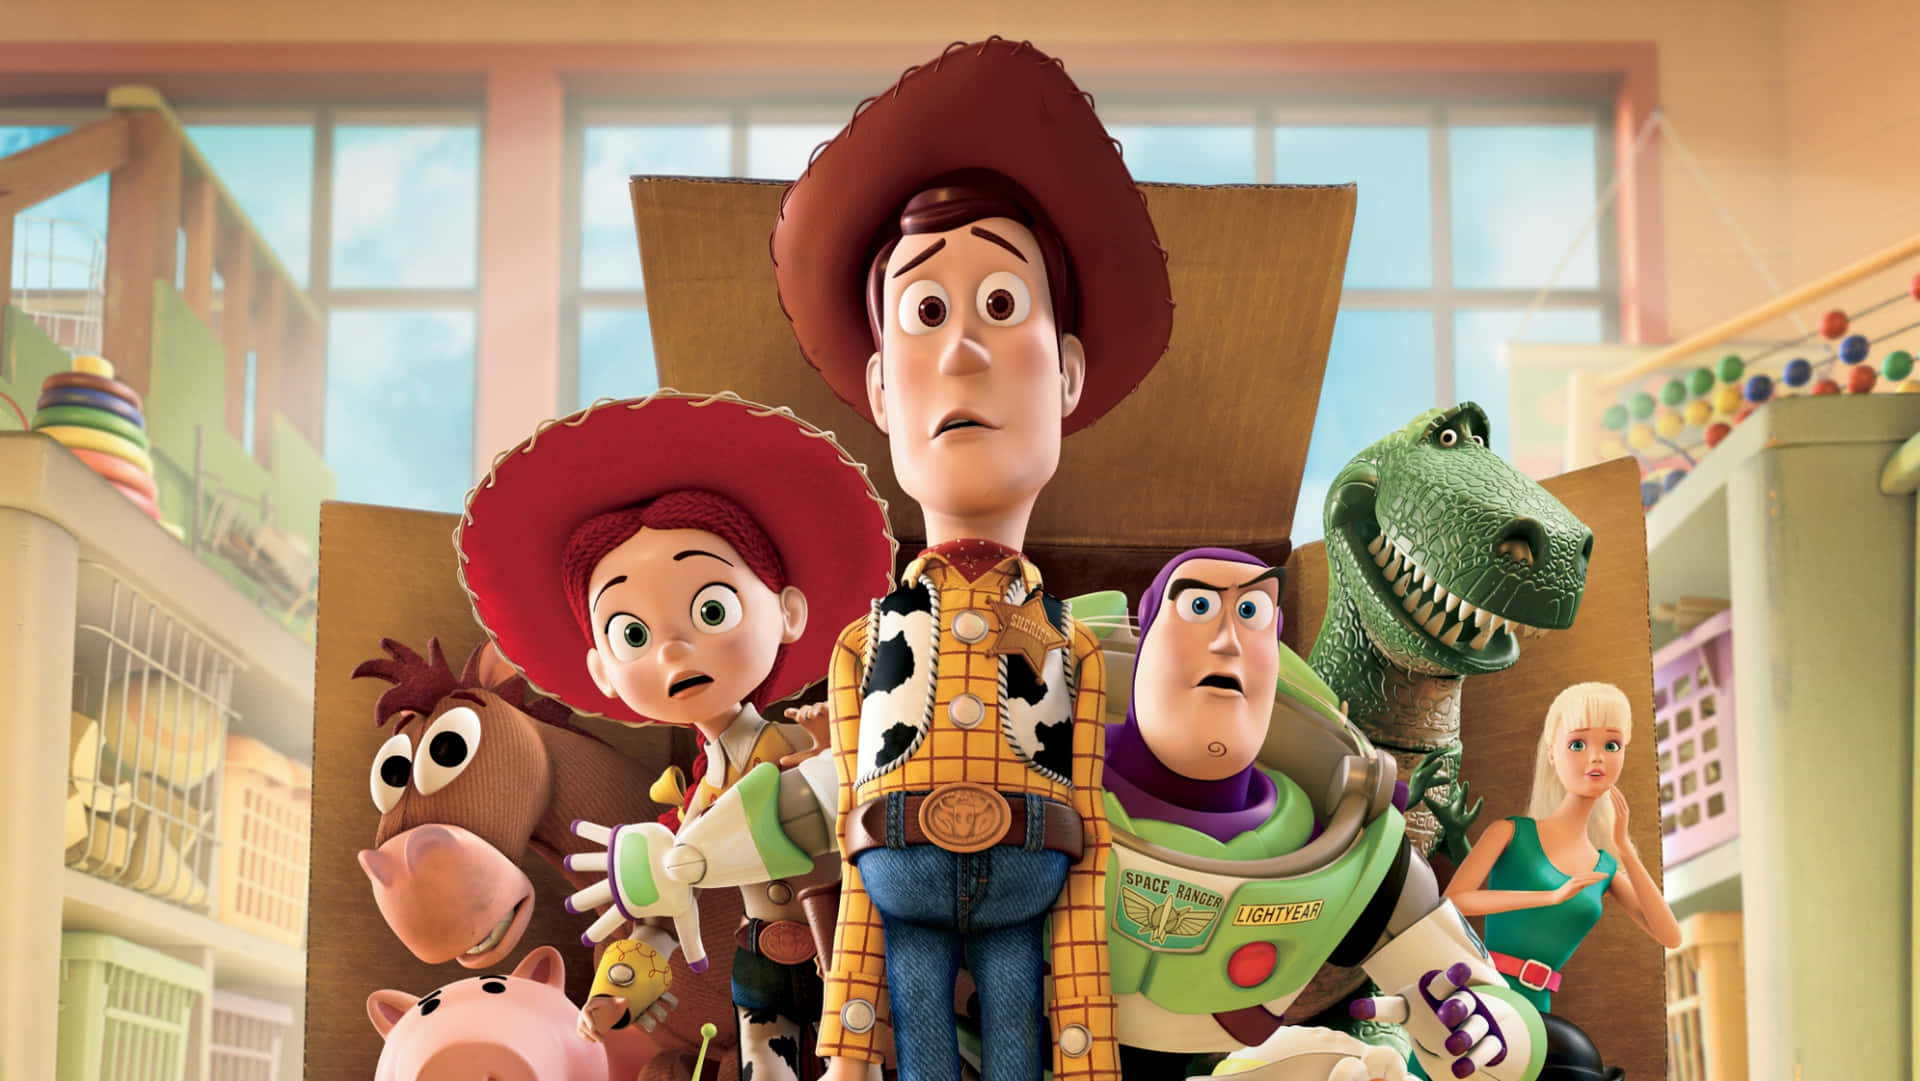 Losceriffo Woody E Forky Si Avventurano In Una Nuova Avventura In Toy Story 4.